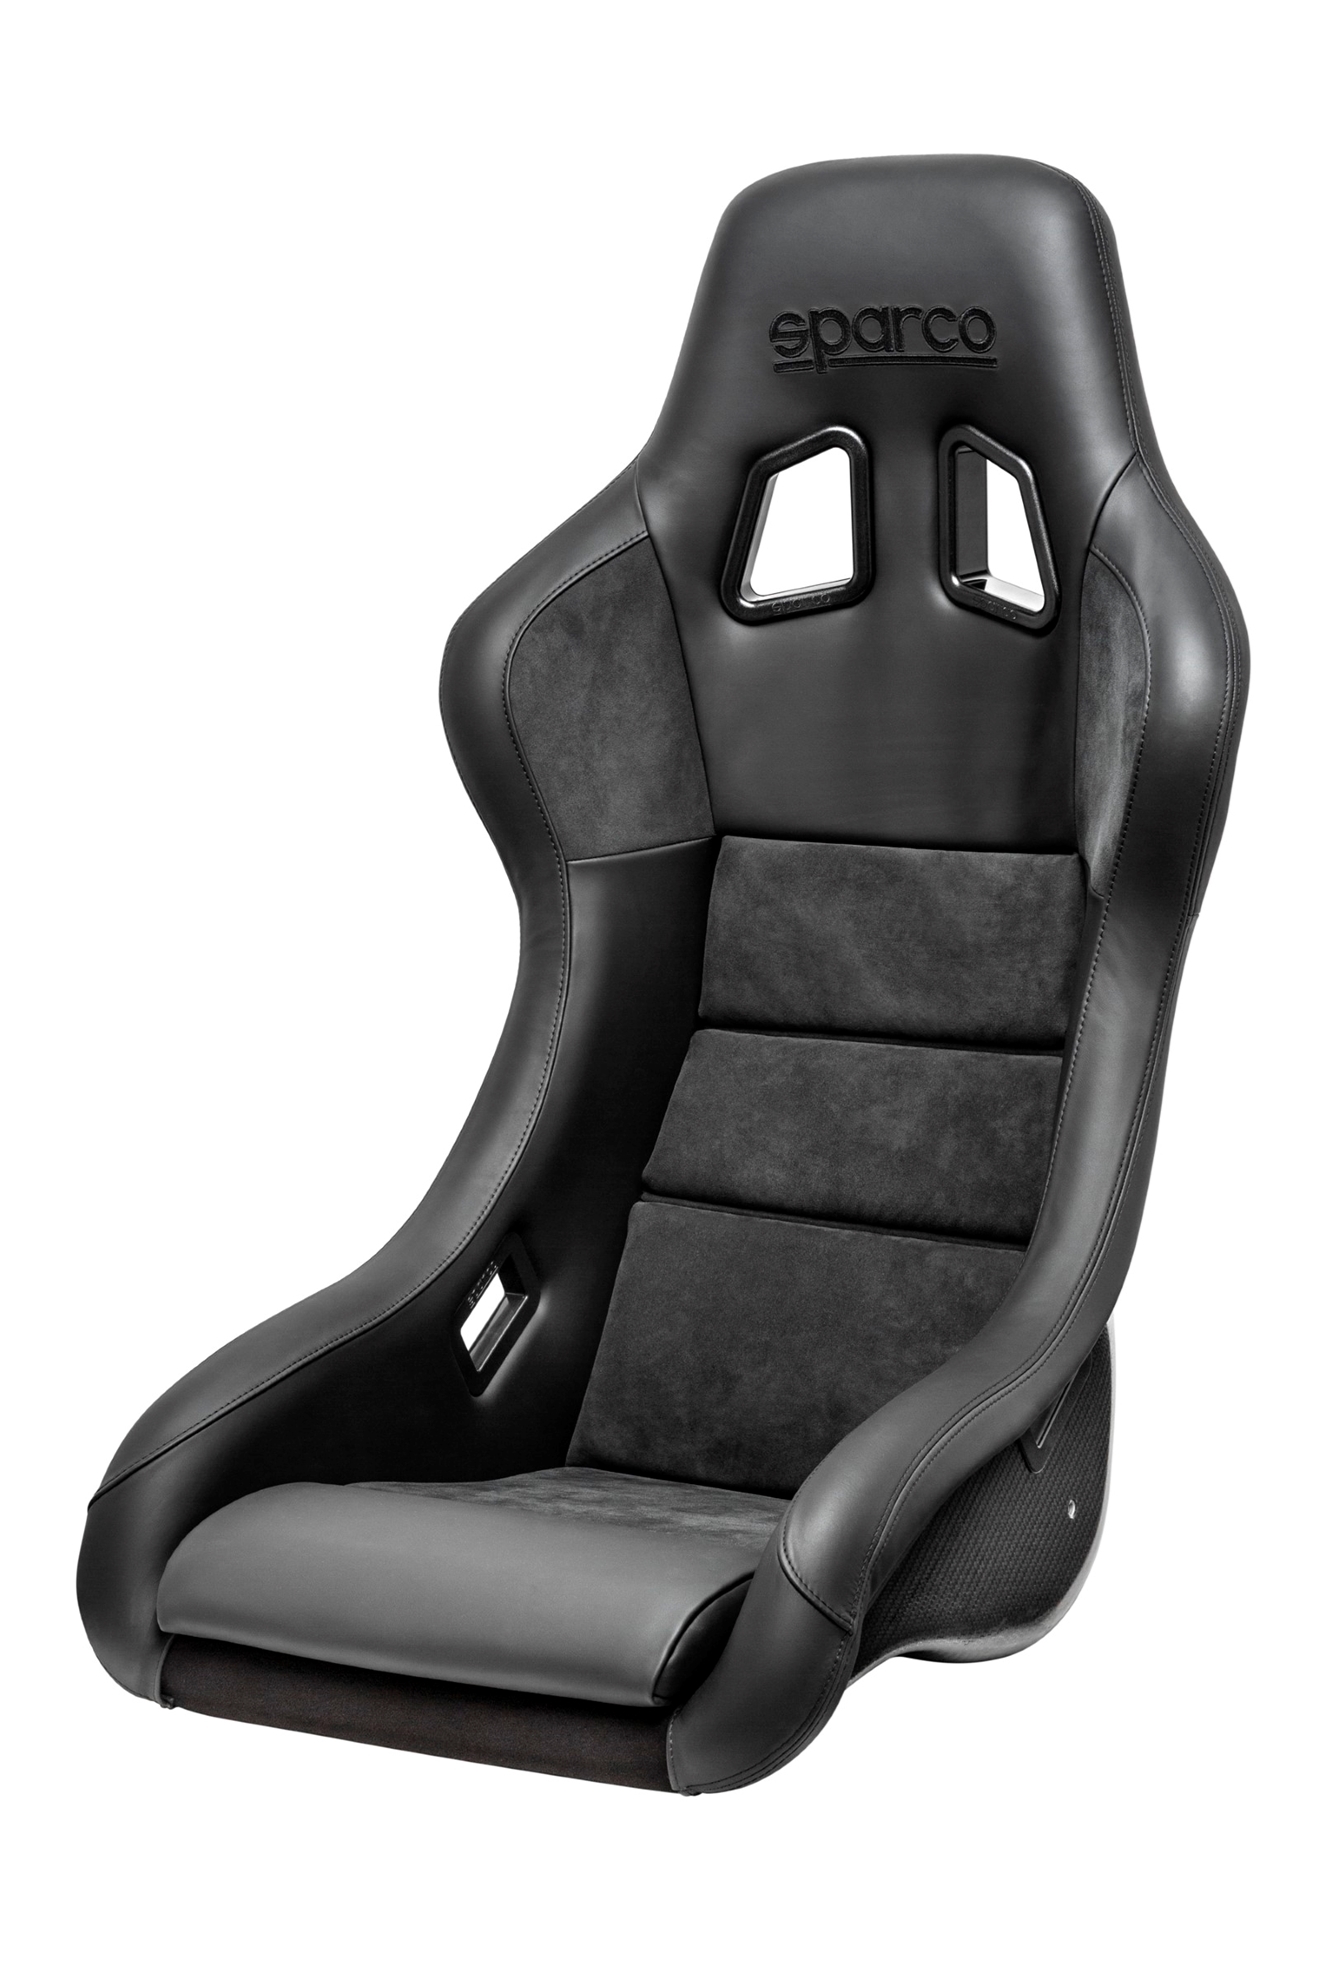 Sparco QRT-C PERFORMANCE Seat (CARBON) - Black/Black Stitch